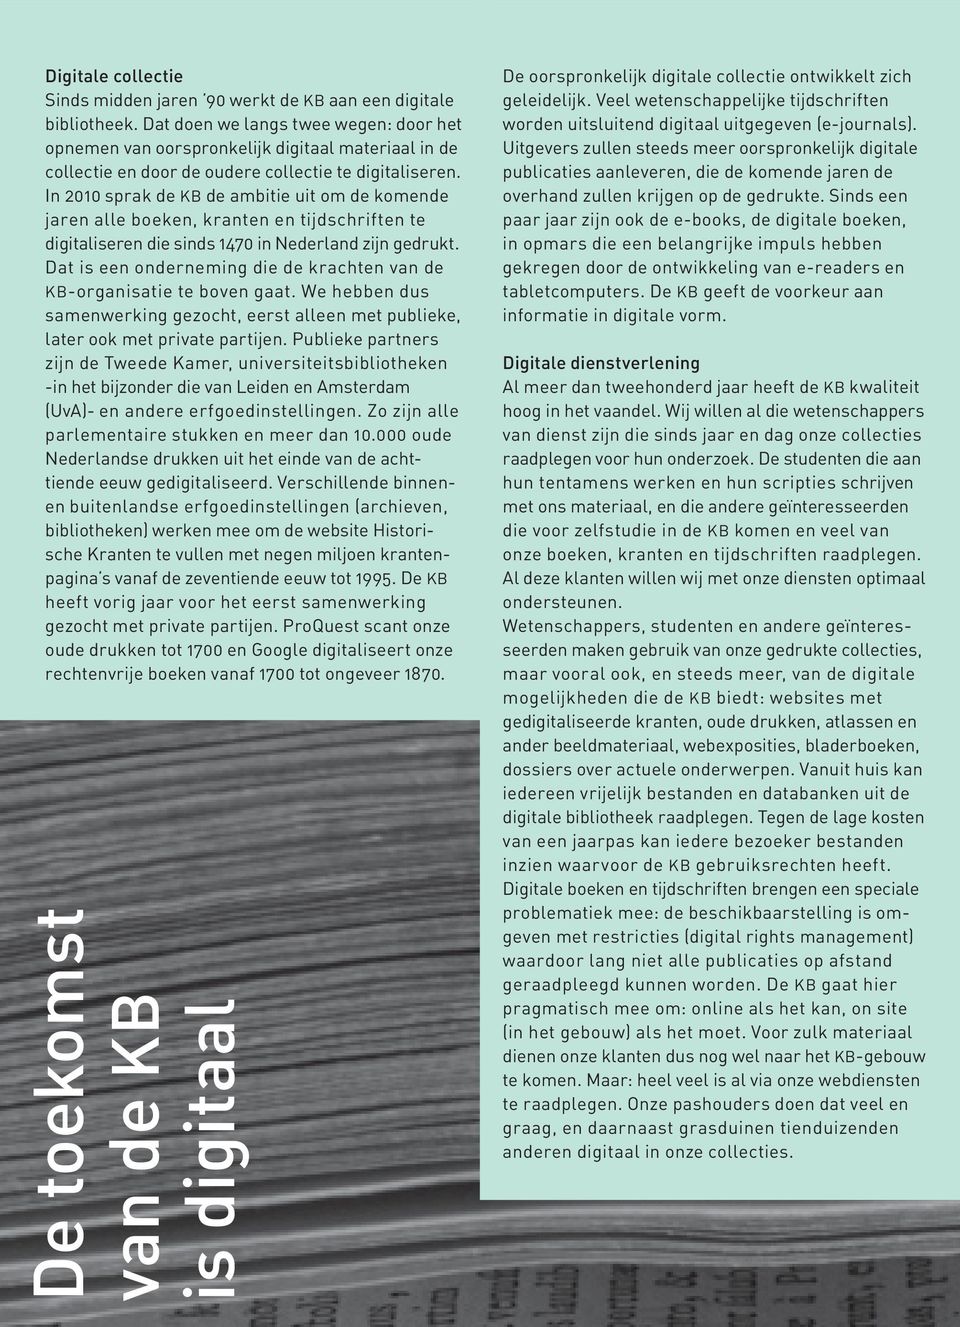 In 2010 sprak de KB de ambitie uit om de komende jaren alle boeken, kranten en tijdschriften te digitaliseren die sinds 1470 in Nederland zijn gedrukt.